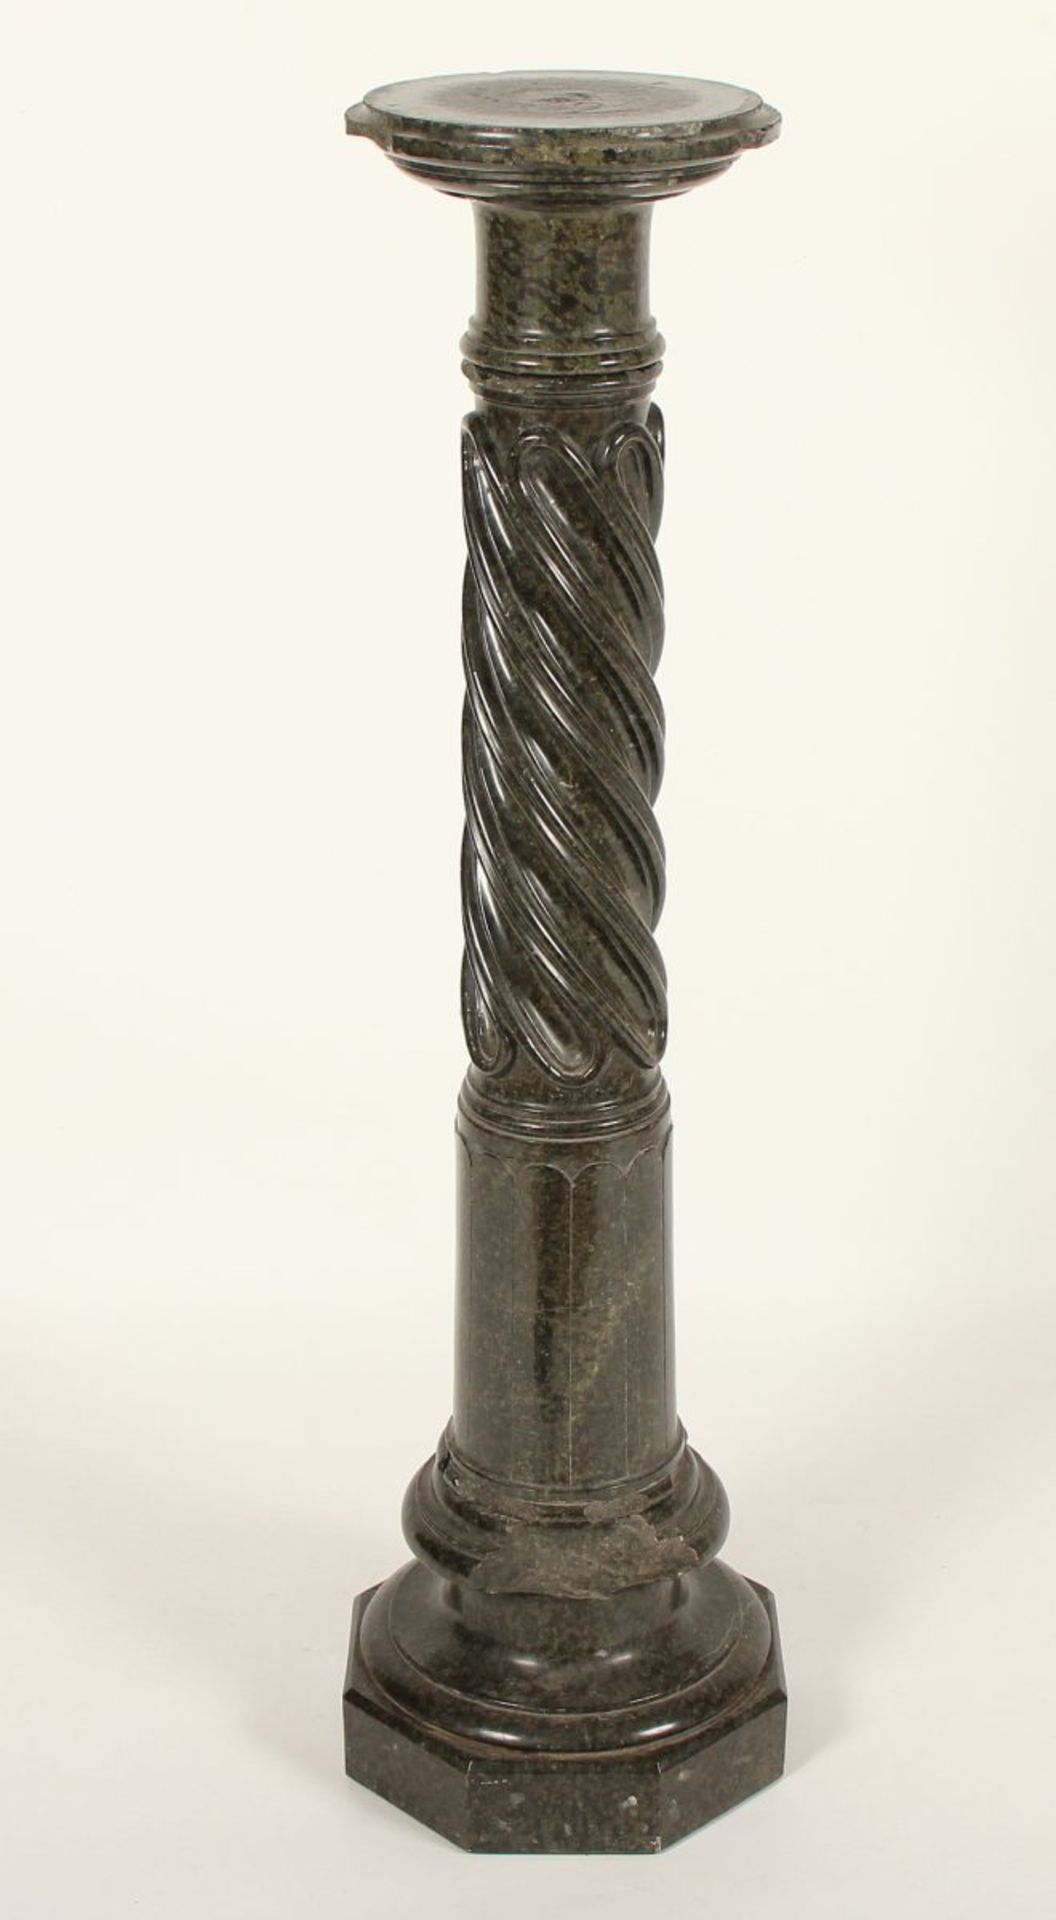 SÄULE, Serpentin, mit drehbarer Plinthe (Höhe 110 cm), leicht besch., ZÖBLITZ, um 1900 - Bild 2 aus 2